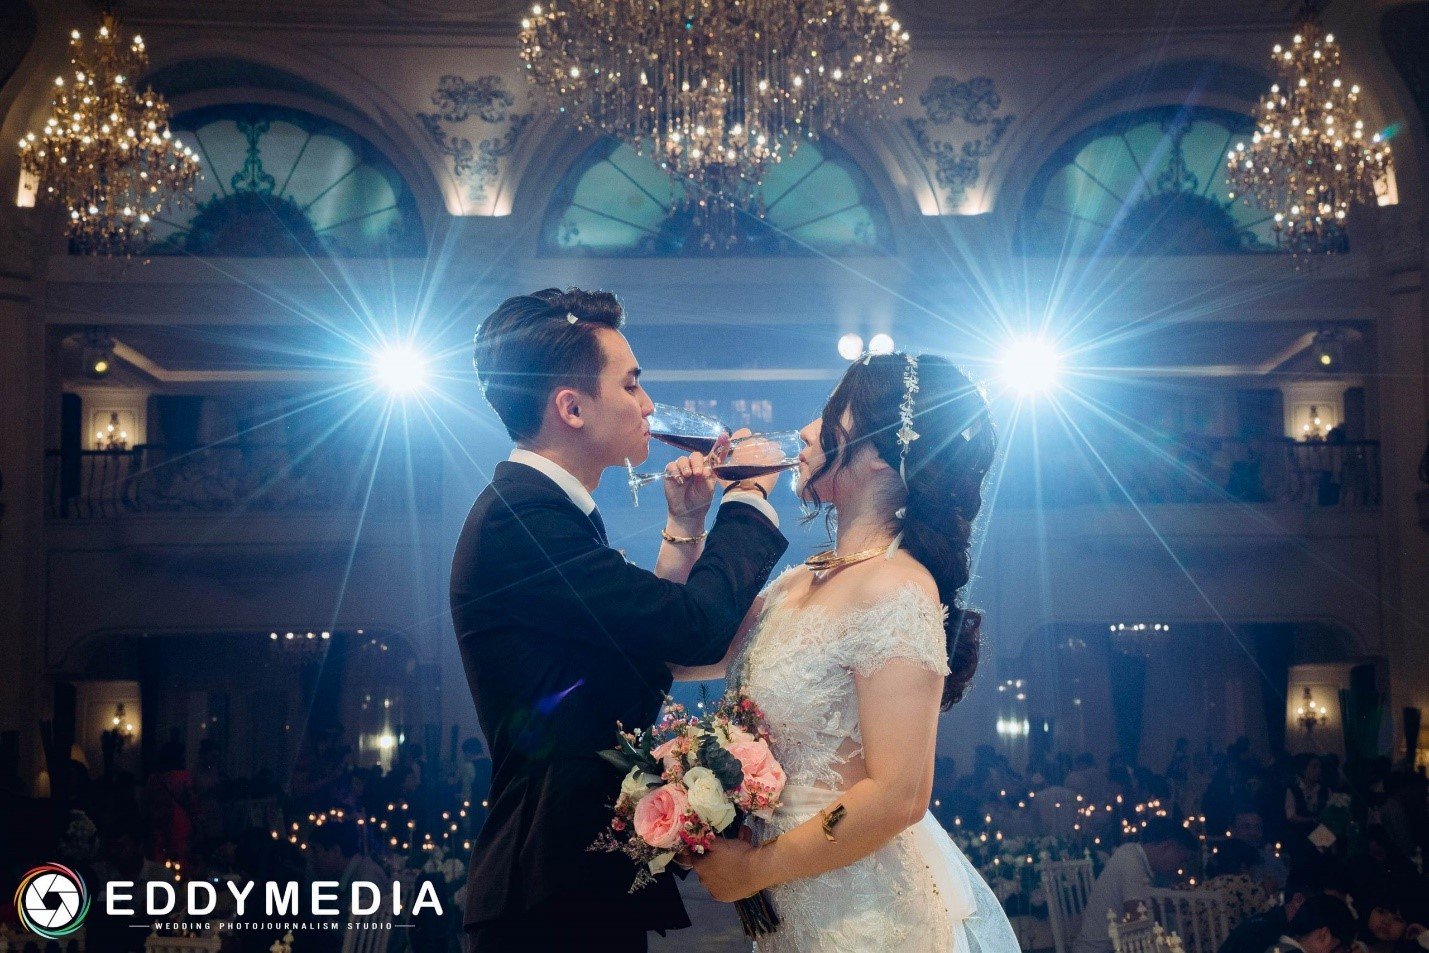 EDDY MEDIA cung cấp dịch vụ chụp hình phóng sự cưới đẹp nhất hiện nay